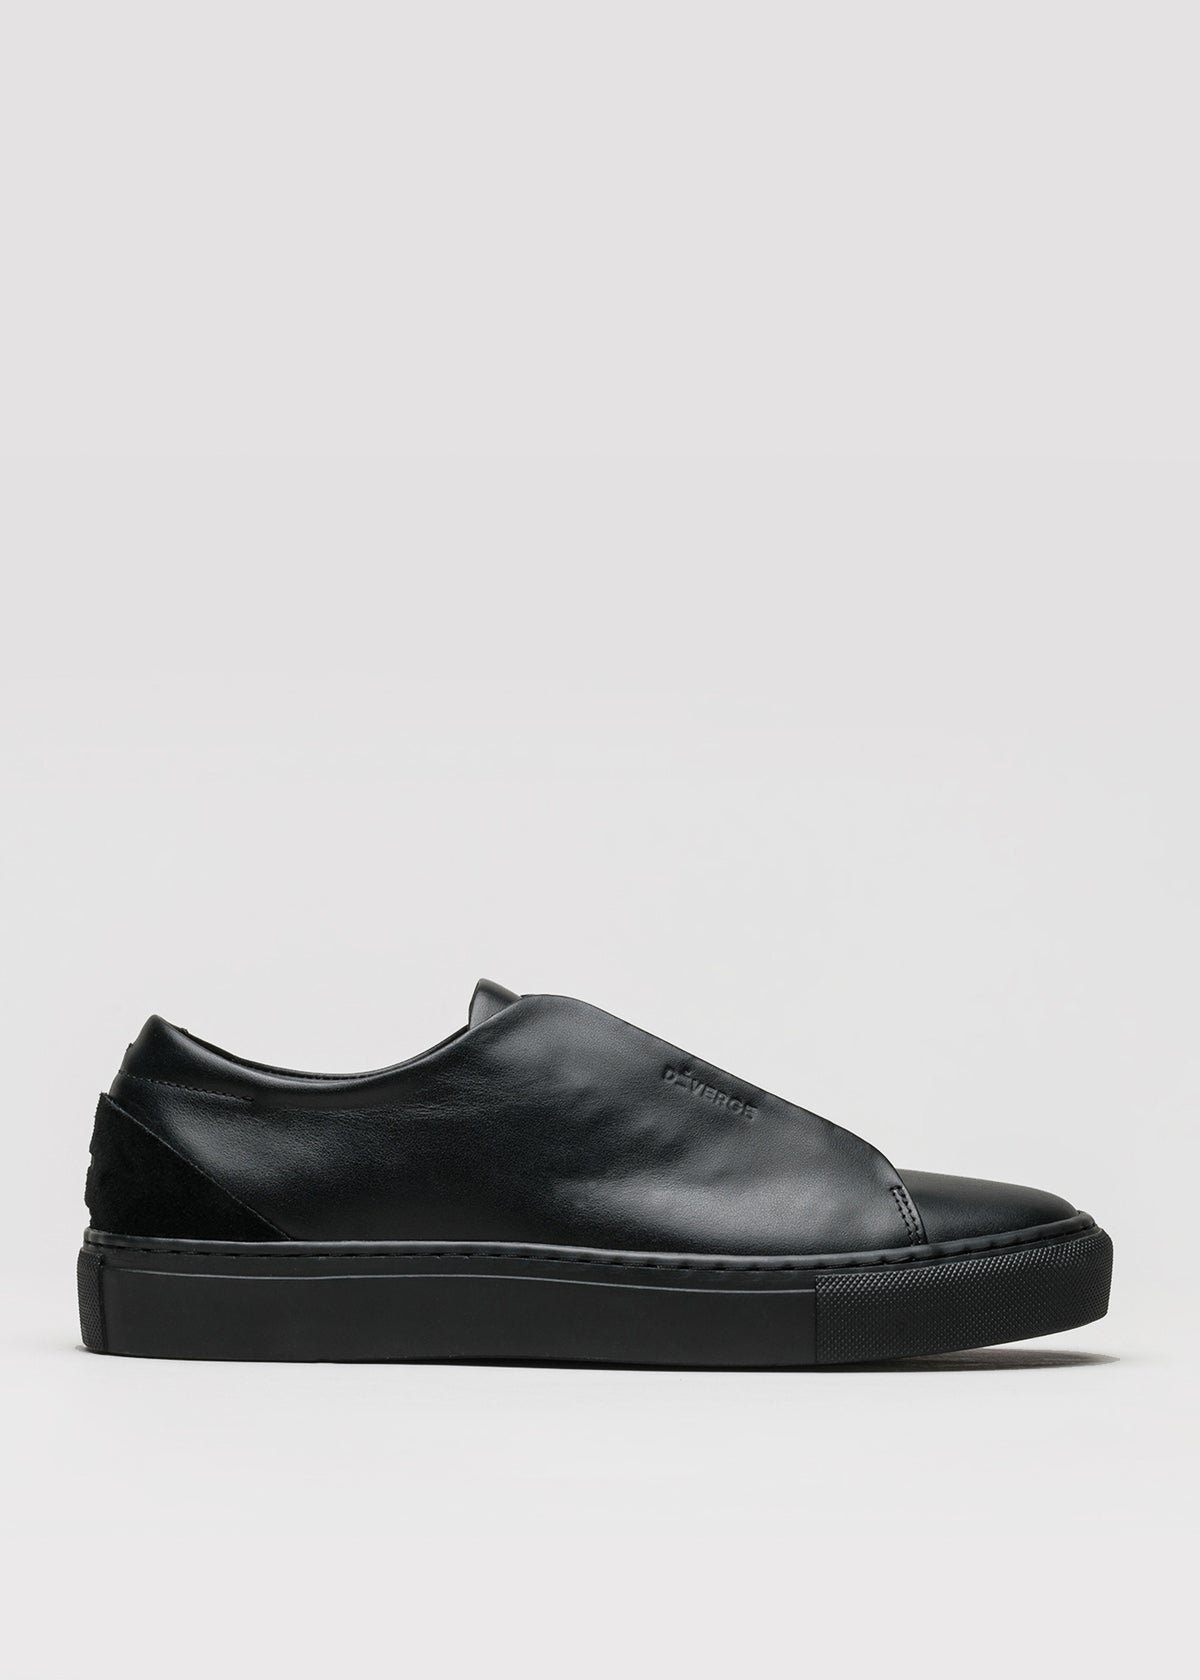 cuir noir premium low sneakers en clean design sideview